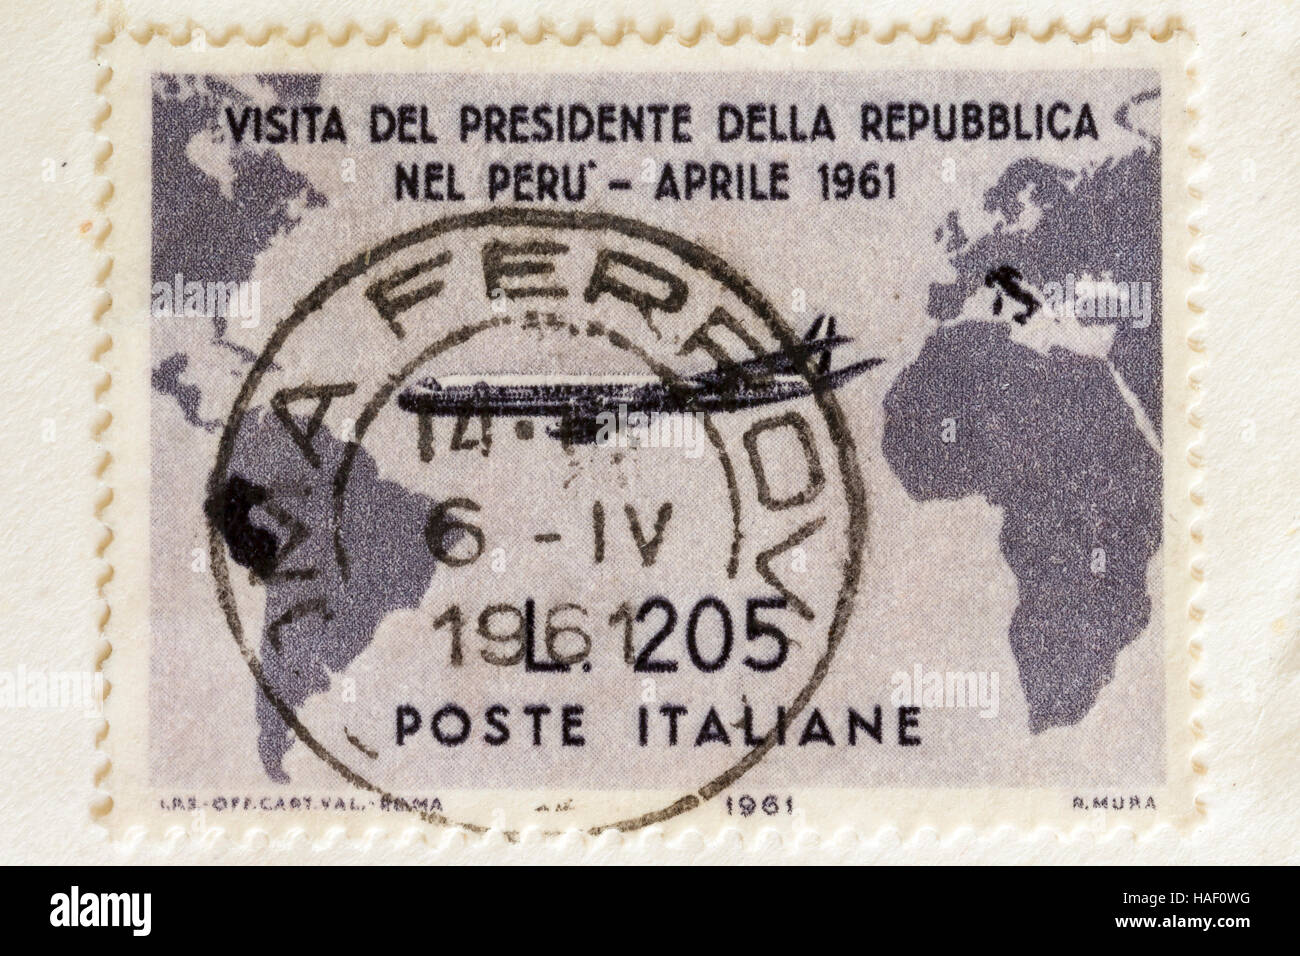 Biella, Italie - le 26 novembre 2016. rare poste représentant après la visite du président gronchi au Pérou en avril 1961 Banque D'Images